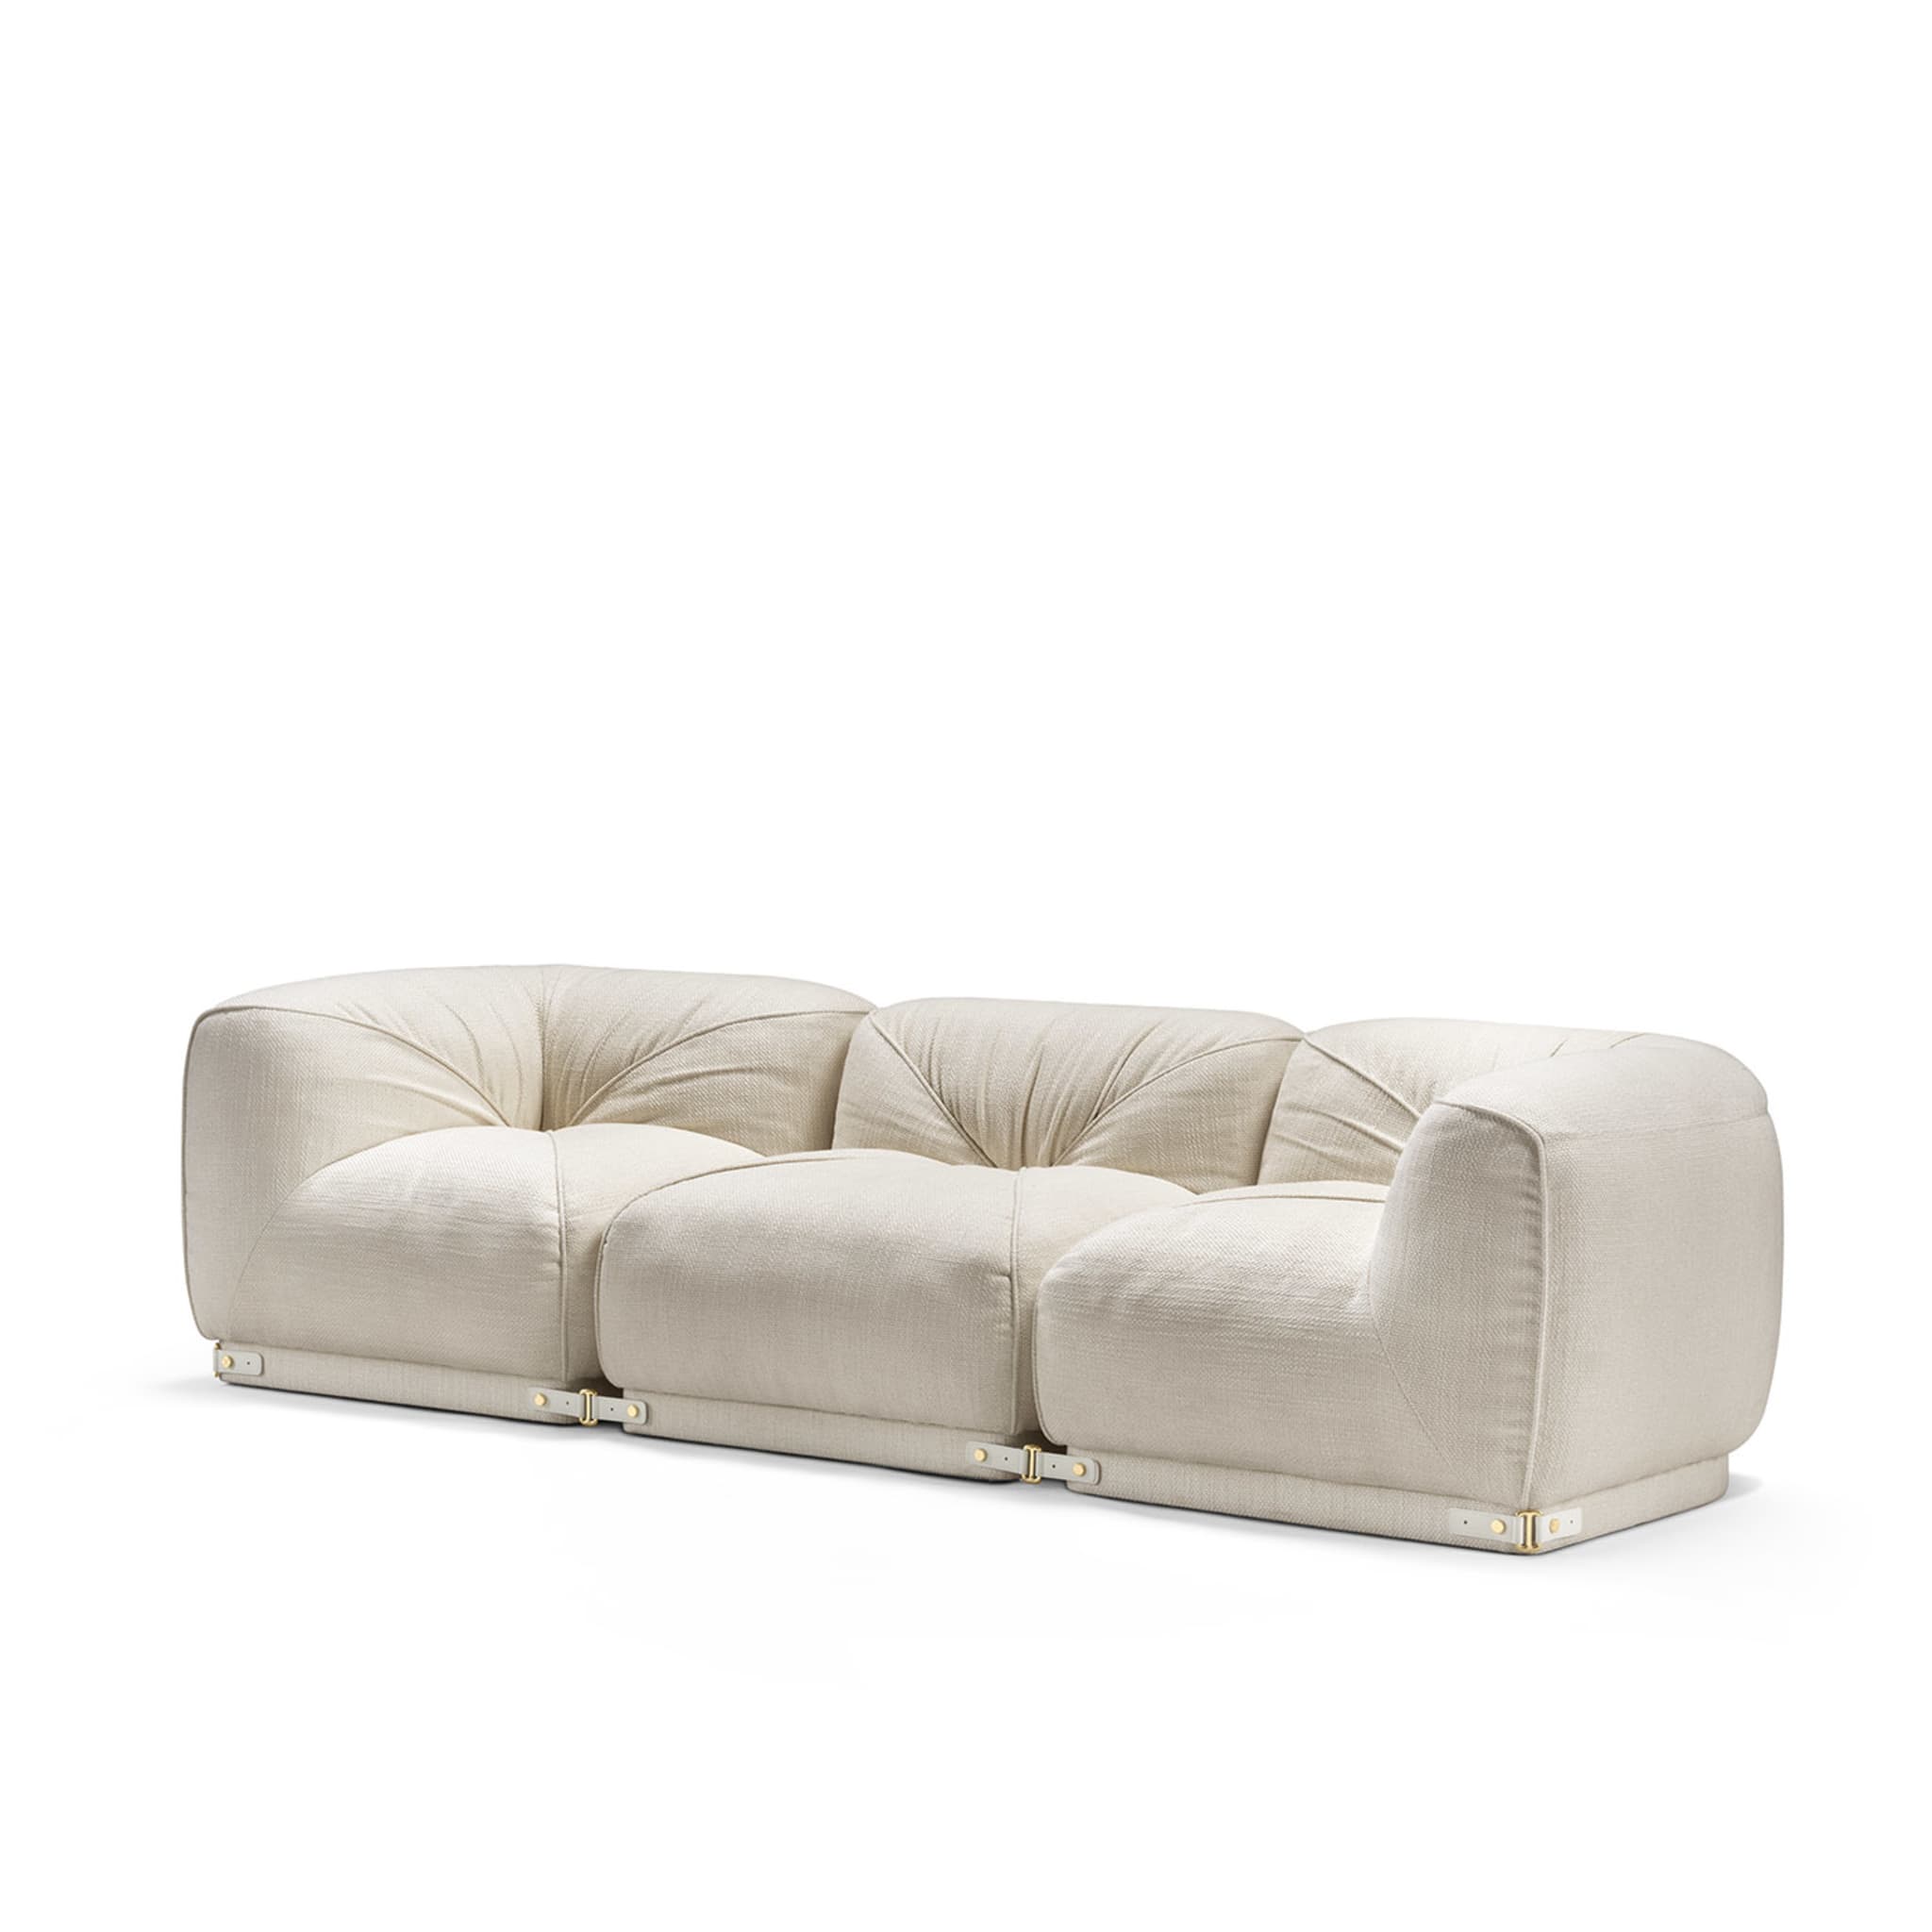 Leisure 3-Seater White Sofa by Lorenza Bozzoli - Alternative view 2